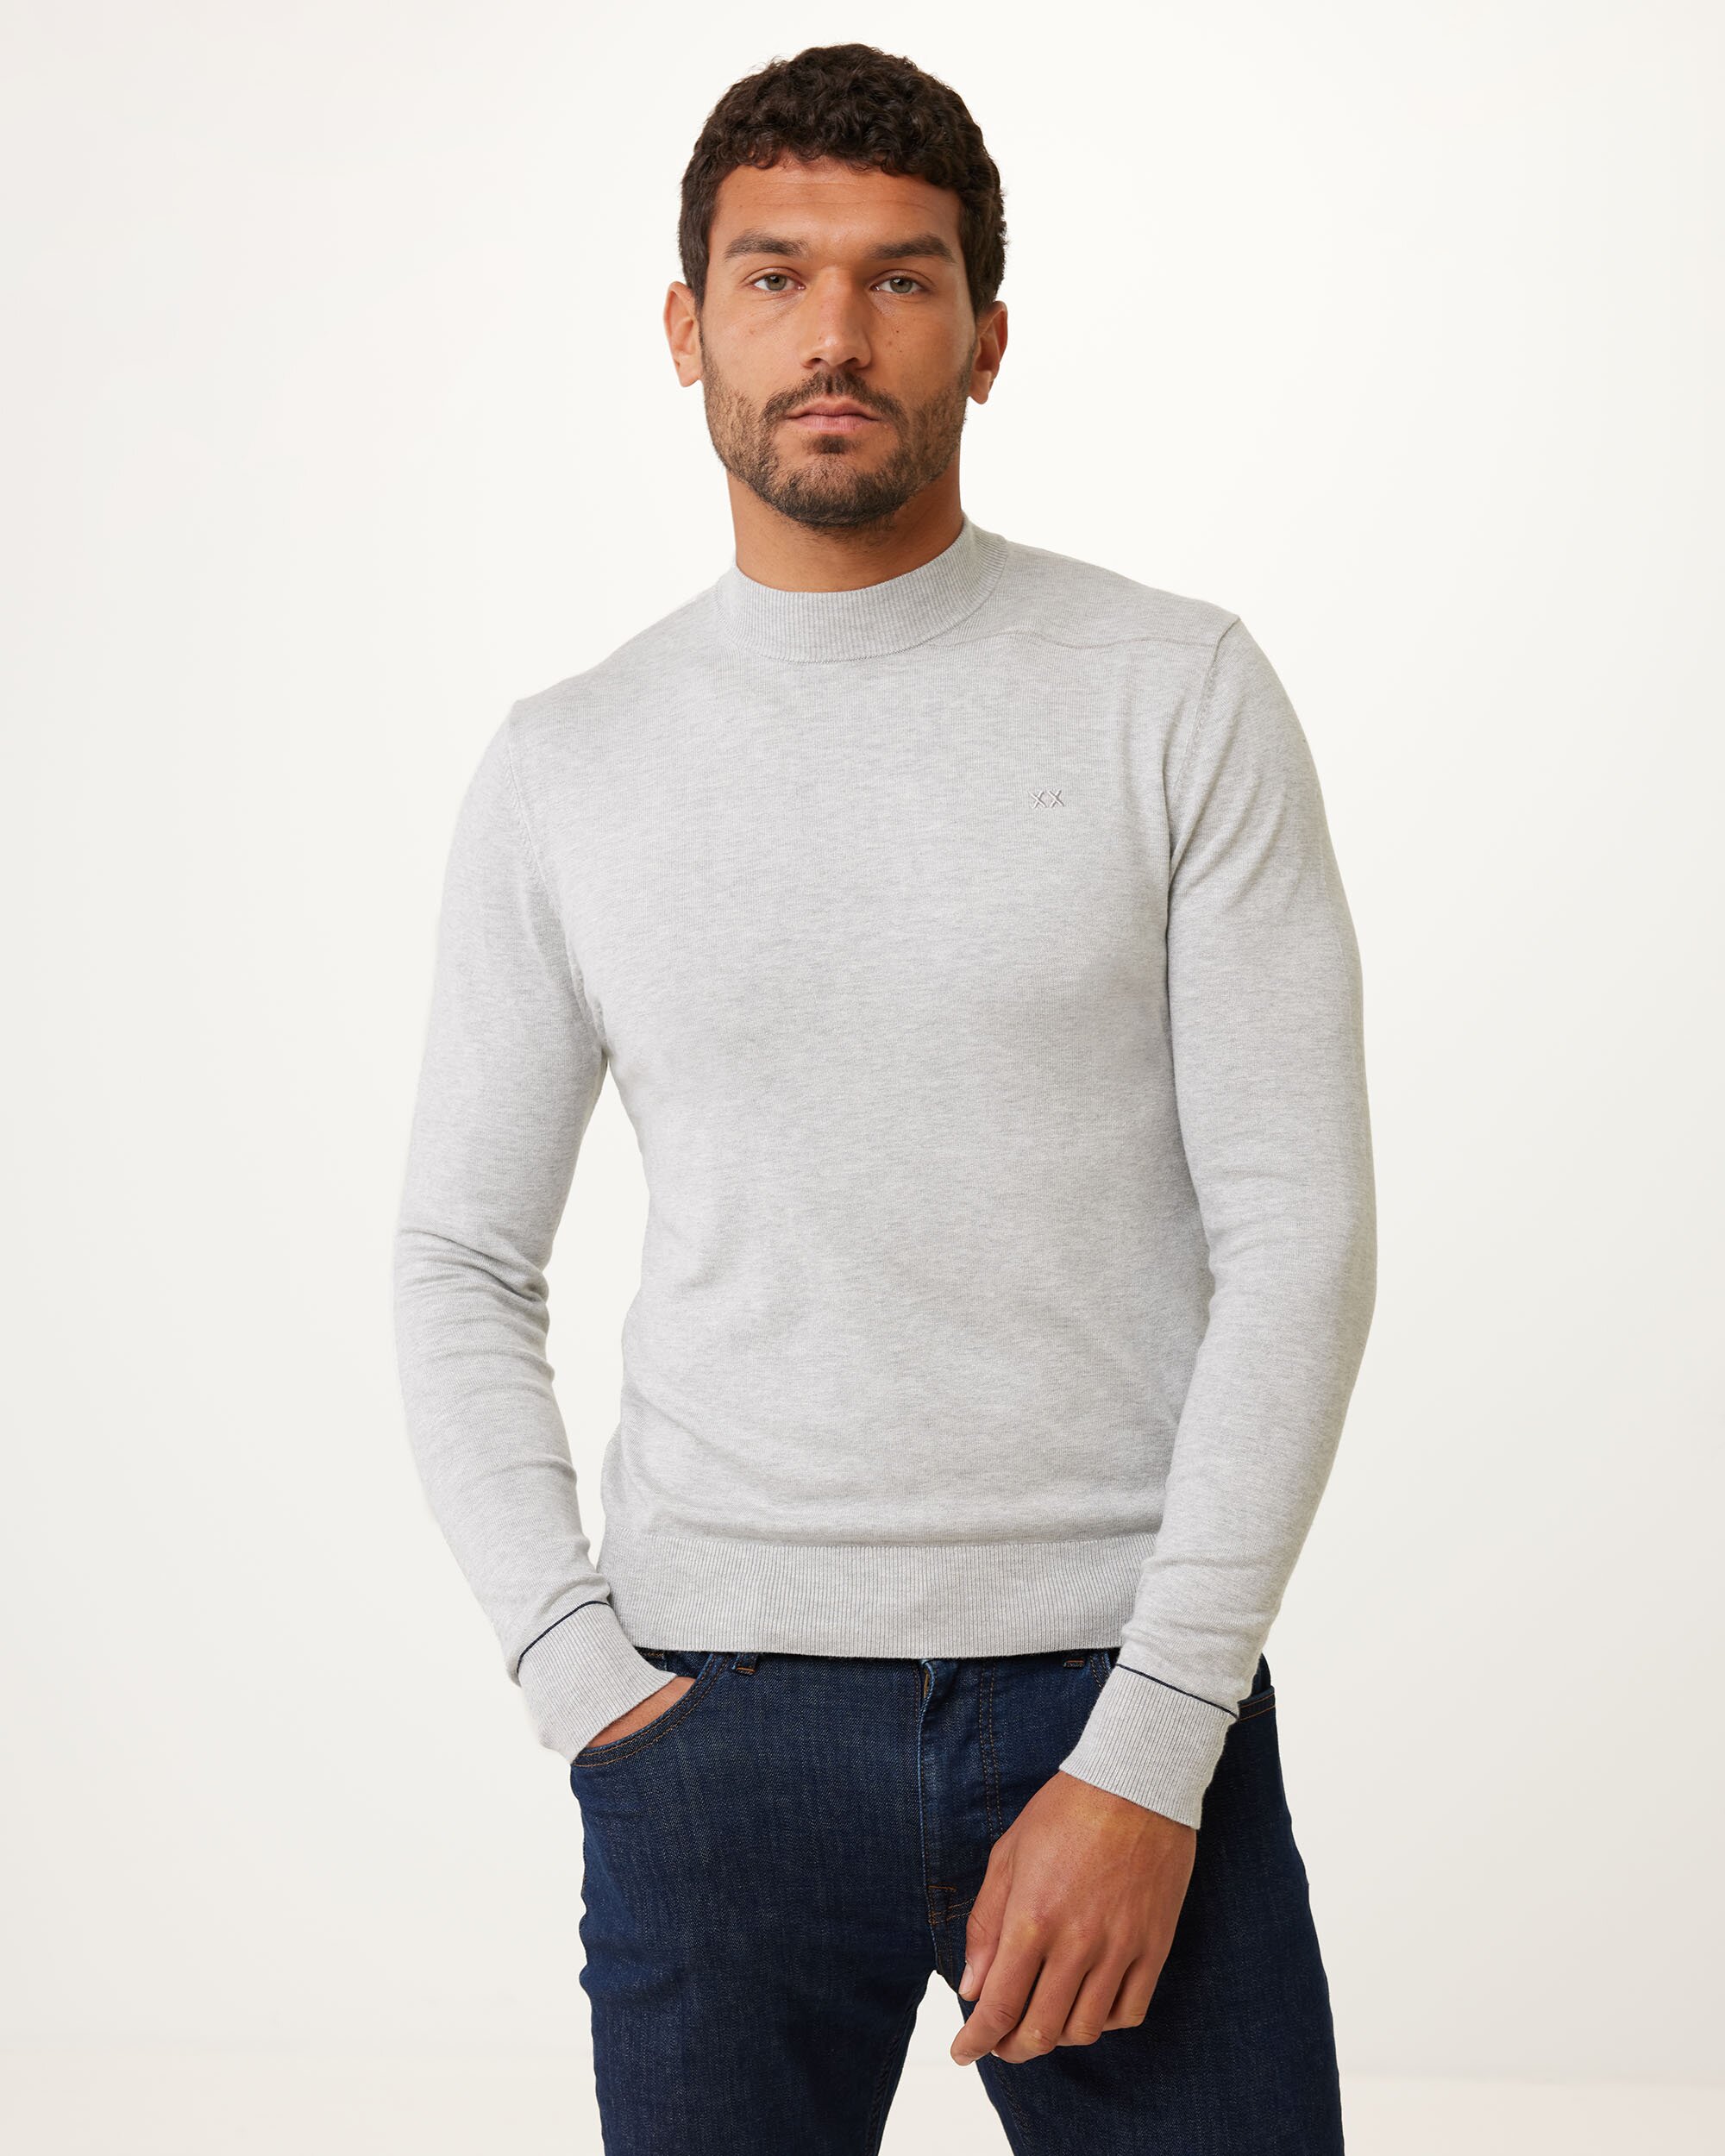 Mexx Turle Neck Sweater Mannen - Grijs - Maat XL